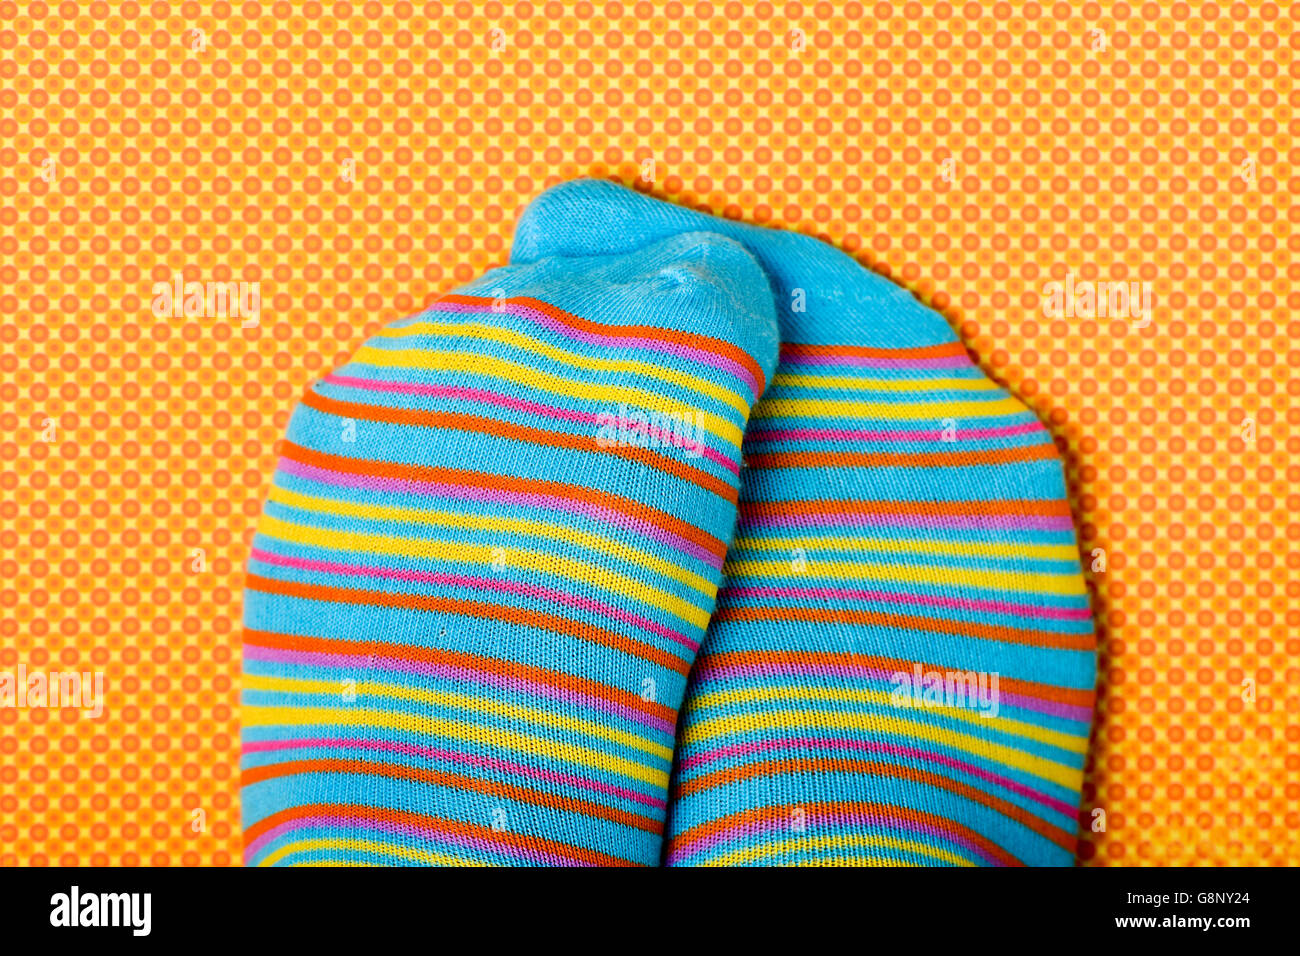 Primer plano de alguien frota sus pies ropas coloridas telas a rayas calcetines, en una naranja y amarillo backgroun estampadas Foto de stock